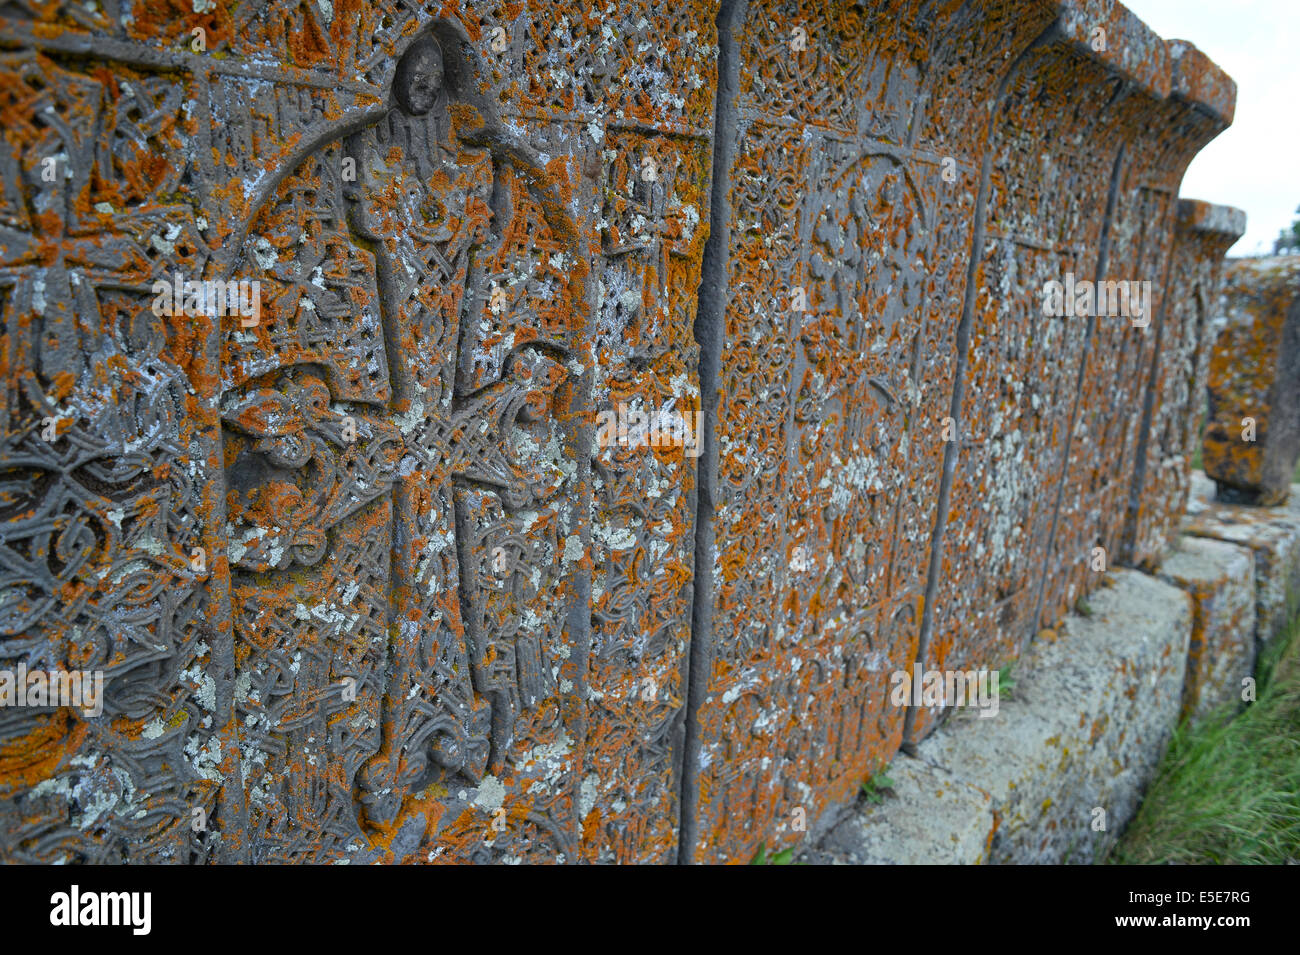 Die mittelalterliche Noraduz Friedhof mit seinen vielfältigen kreuzt geschnitzten Stein in Noraduz, Armenien, 24. Juni 2014. Foto: Jens Kalaene/Dpa - NO WIRE SERVICE Stockfoto